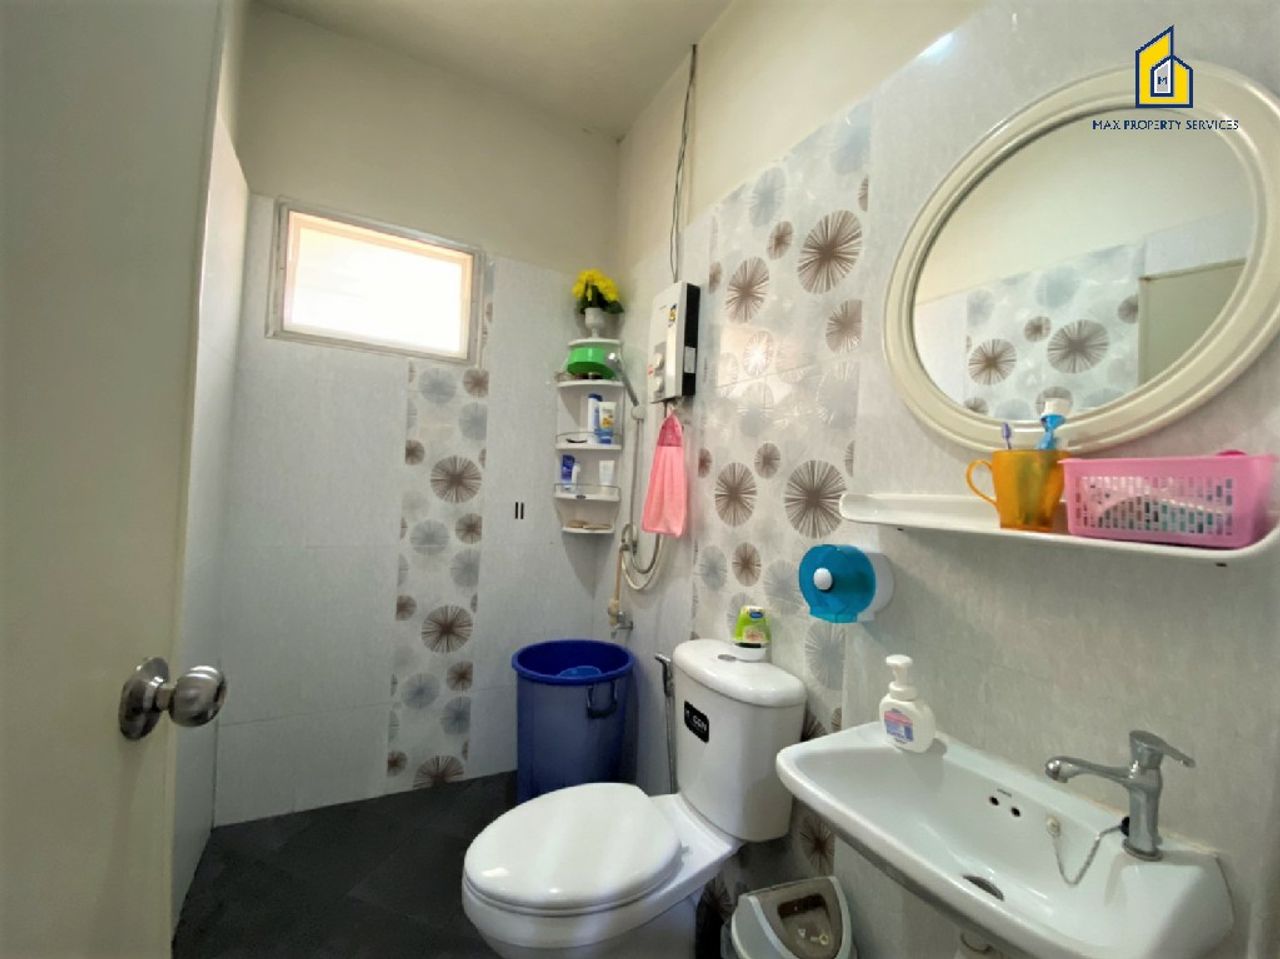 รูปภาพเพิ่มเติม -ขายบ้านเดี่ยว-ลดราคา4แสนบาท-3ห้องนอน-2ห้องน้ำ-บ้านสภาพดี-ใกล้บึงแก่นนคร - ลำดับที่ 10